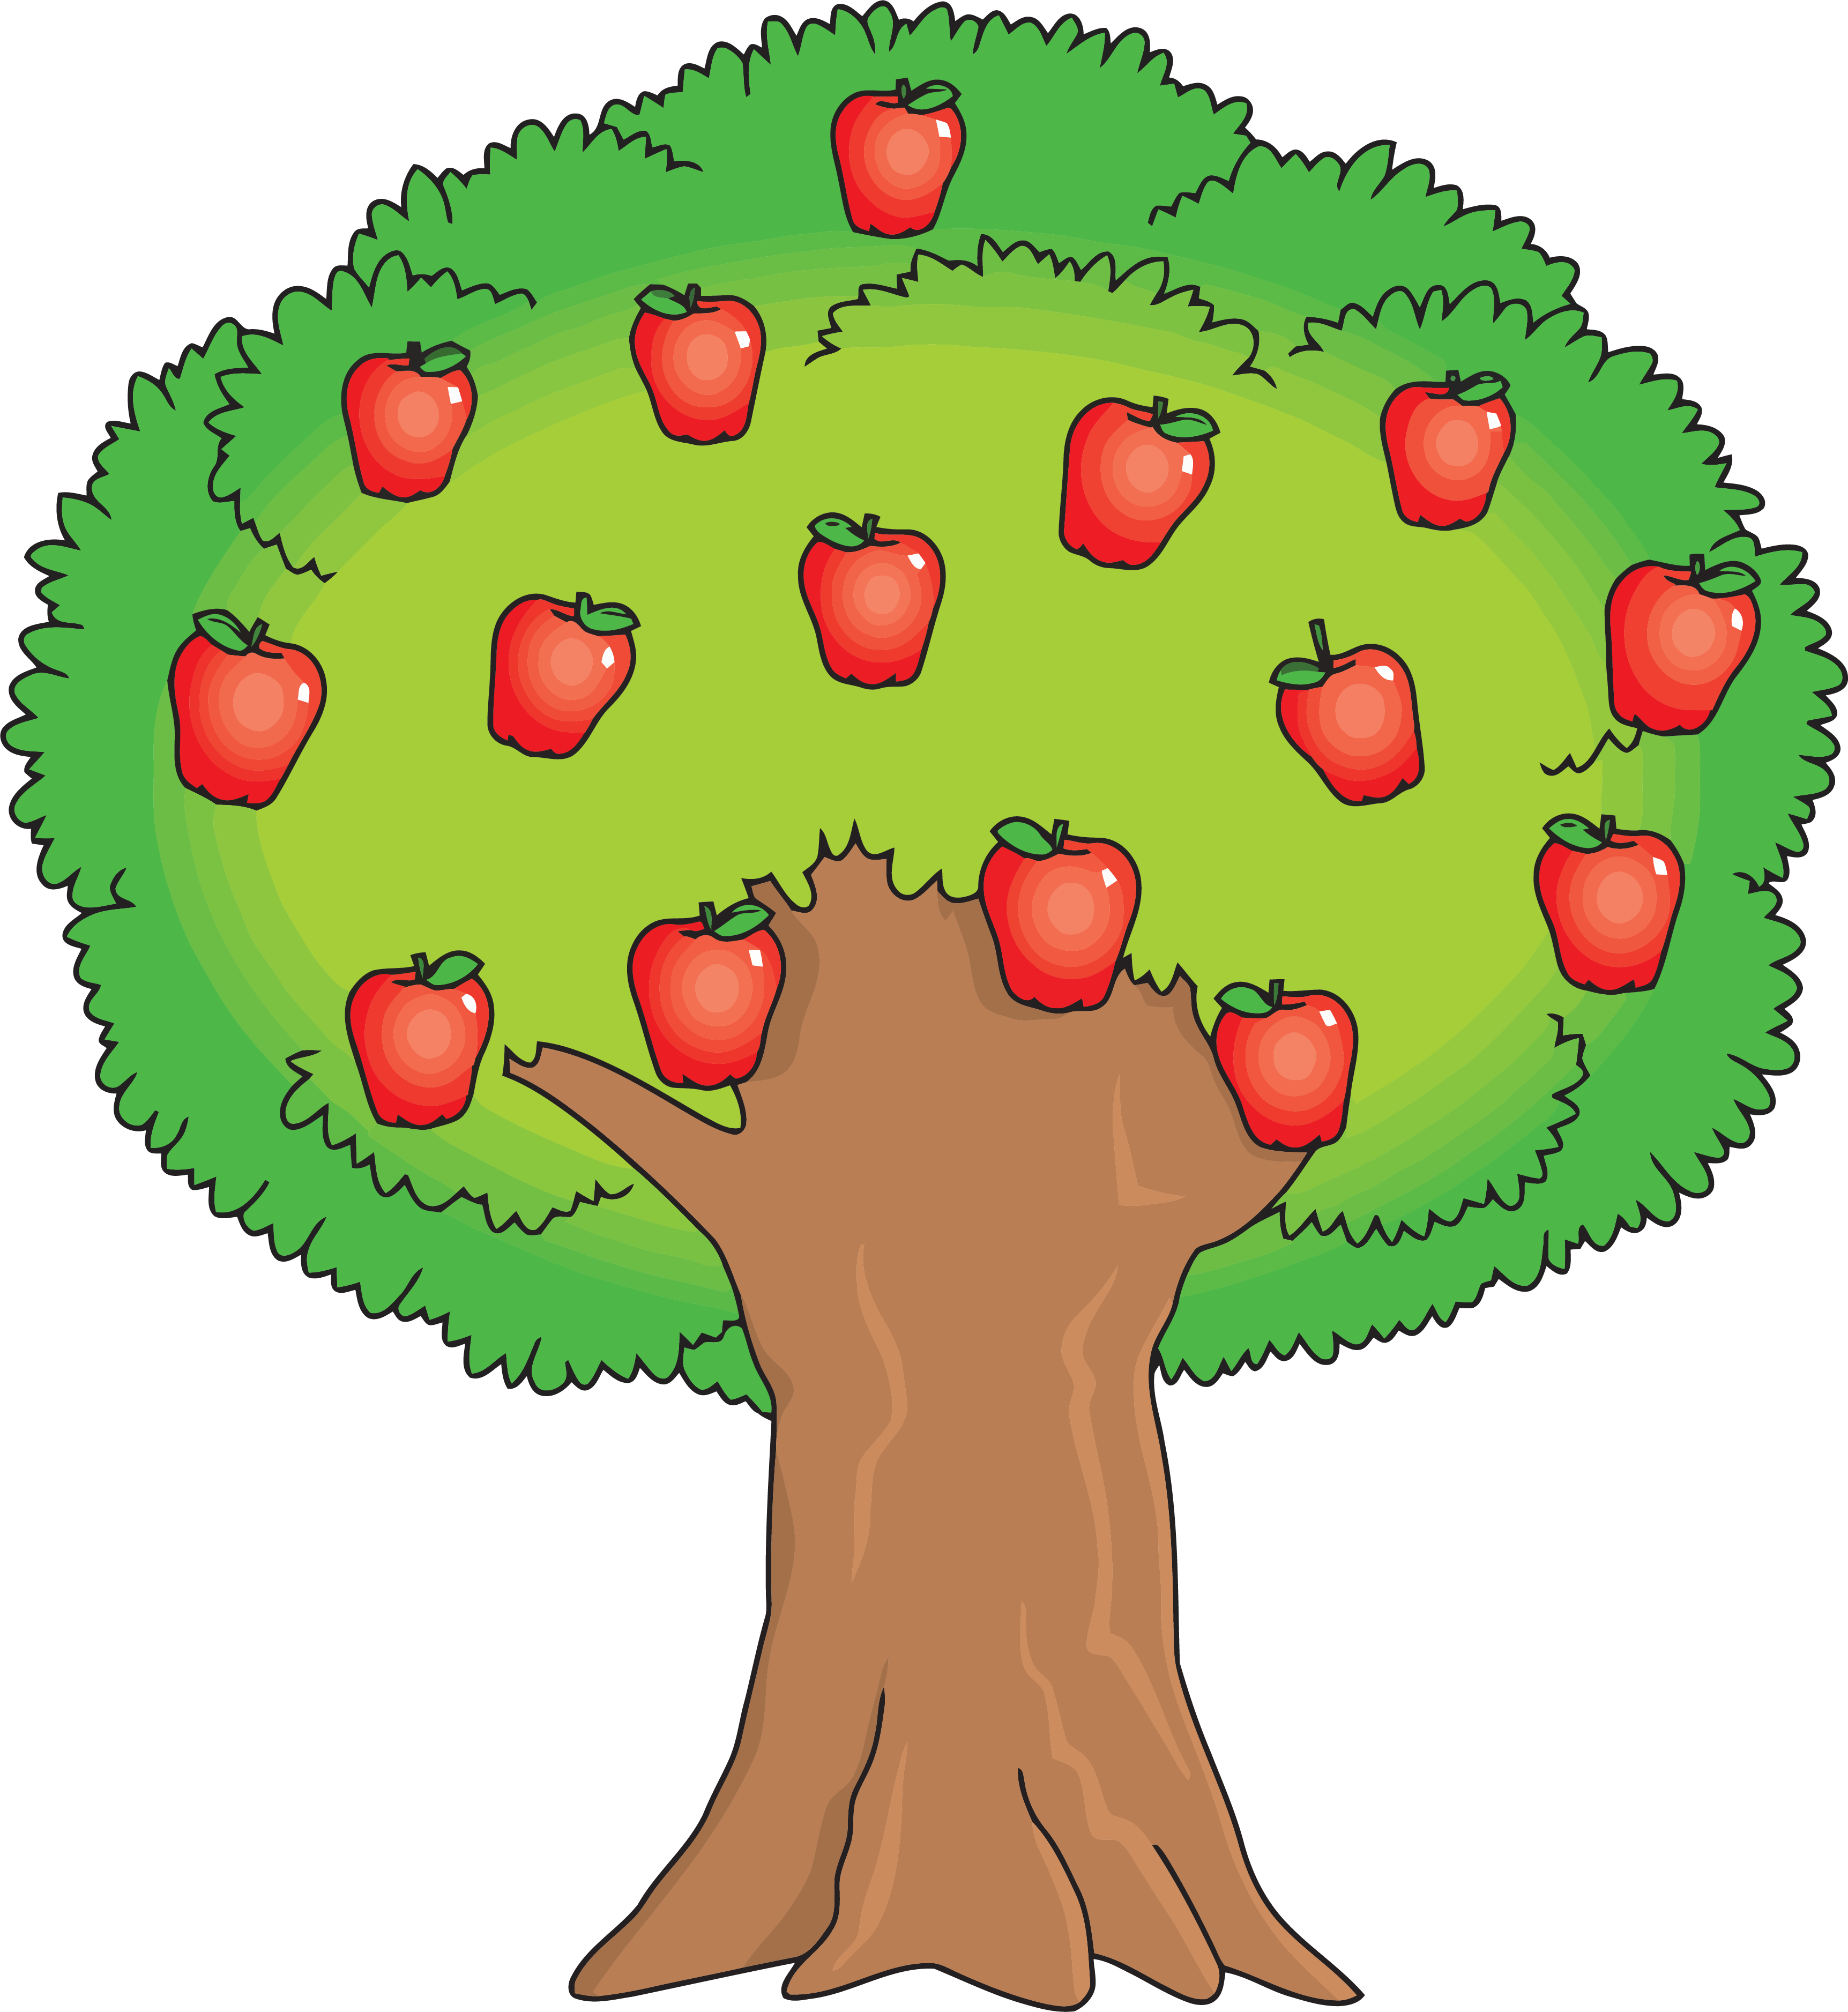 Картинки дерева распечатать цветные. Яблоня с буквами. Большая яблоня рисунок. Дерево генеалогическое дошкольника с падающими яблоками. Органы дерево яблоко.